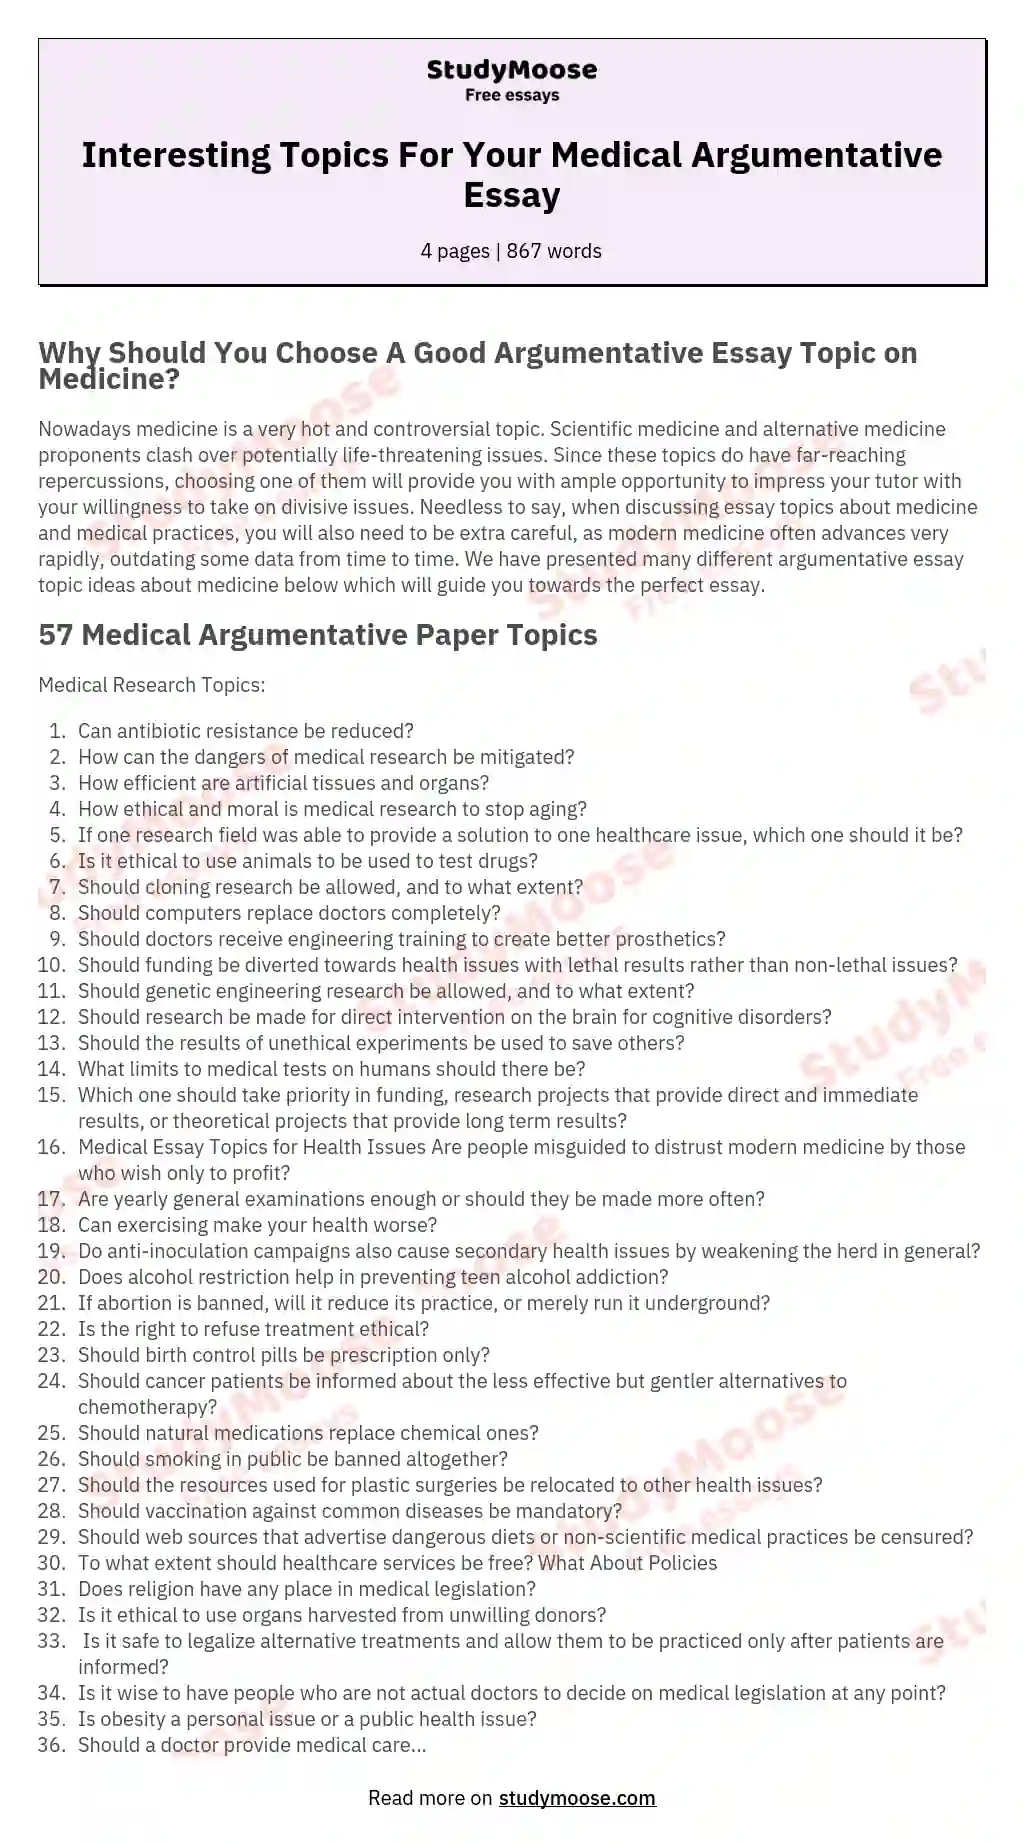 Interesting Topics For Your Medical Argumentative Essay essay